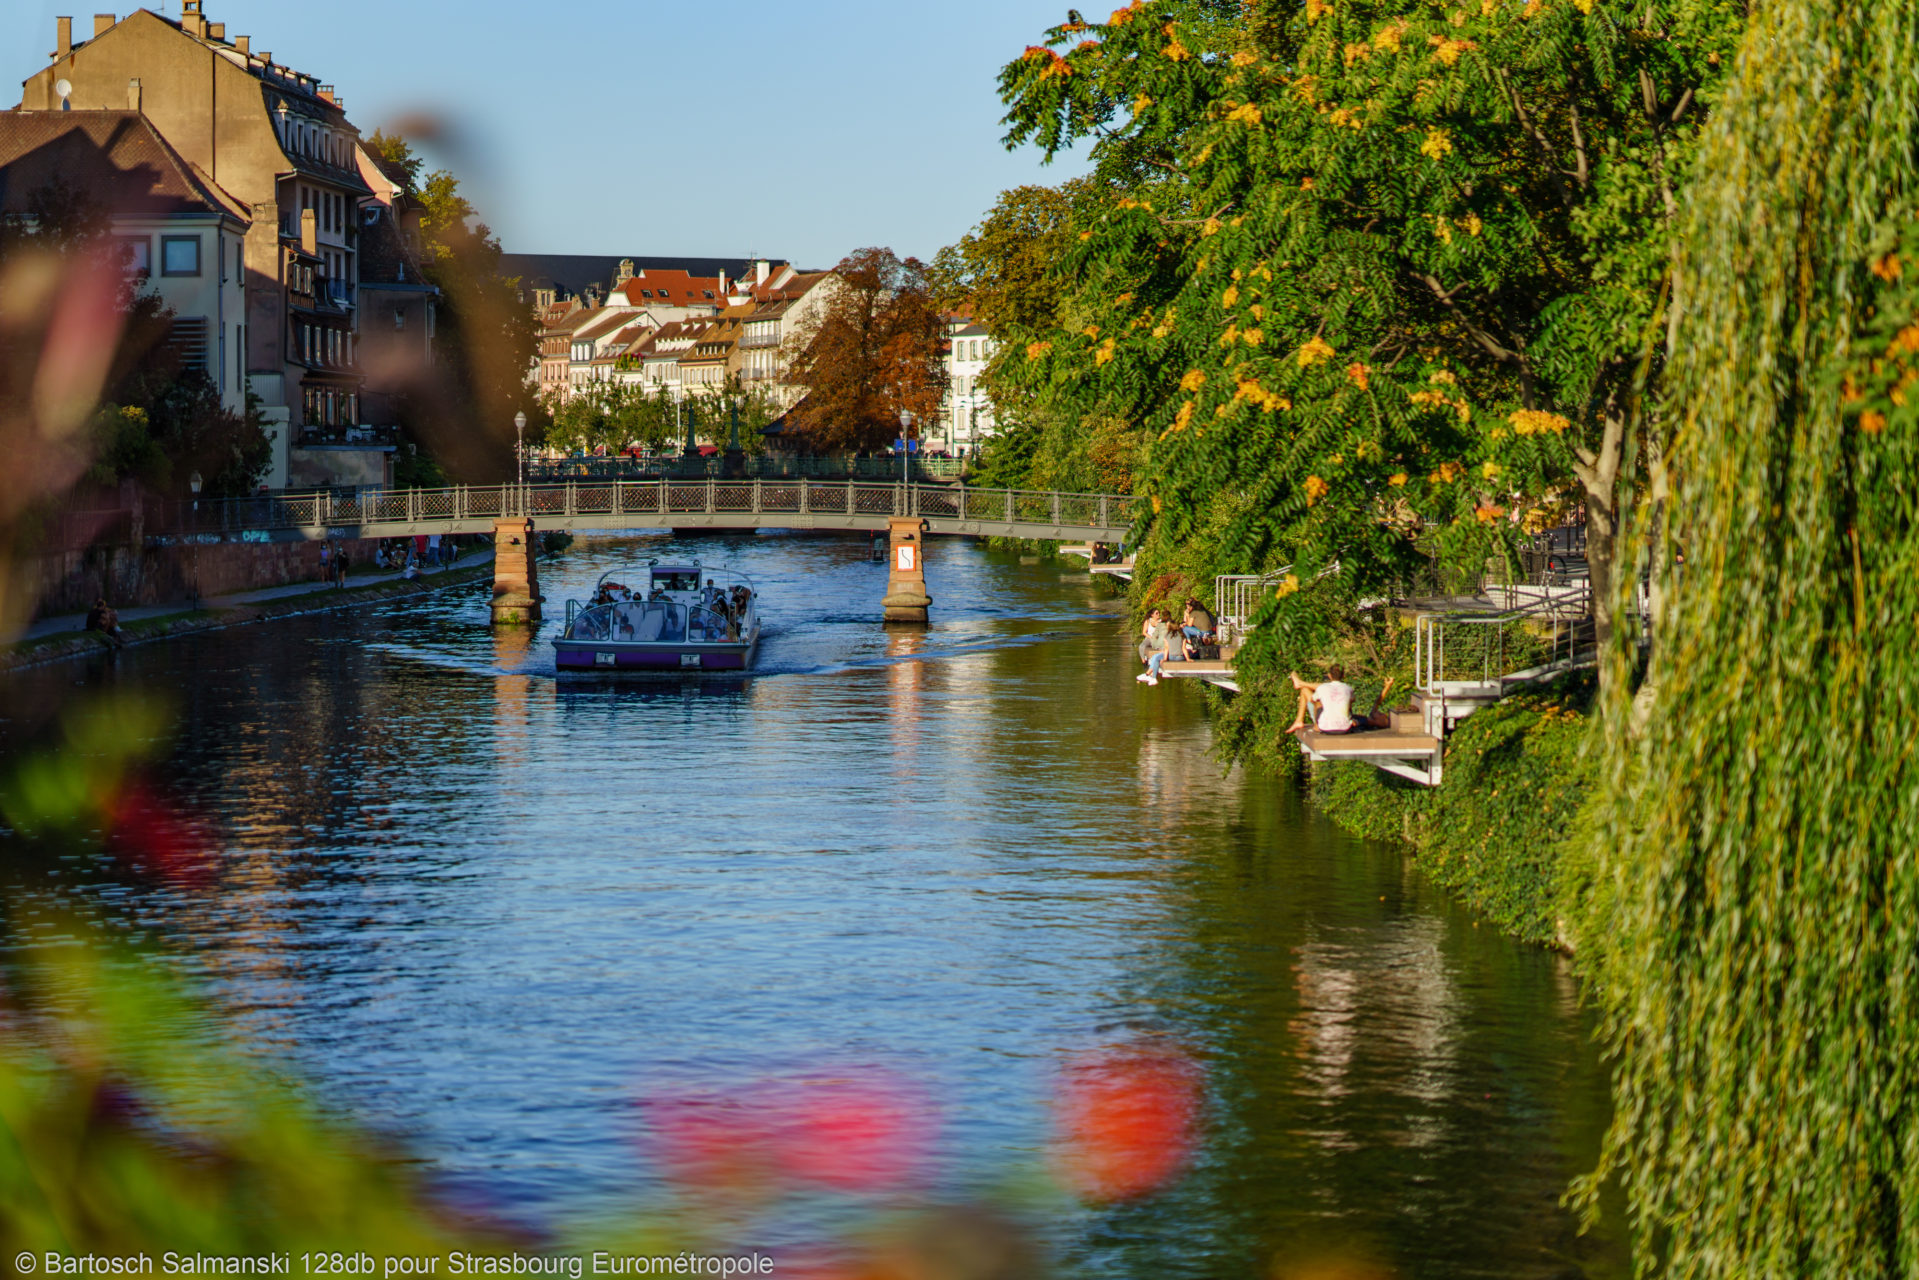 Une promenade en bateau sur l'Ill à Strasbourg pendant l'été